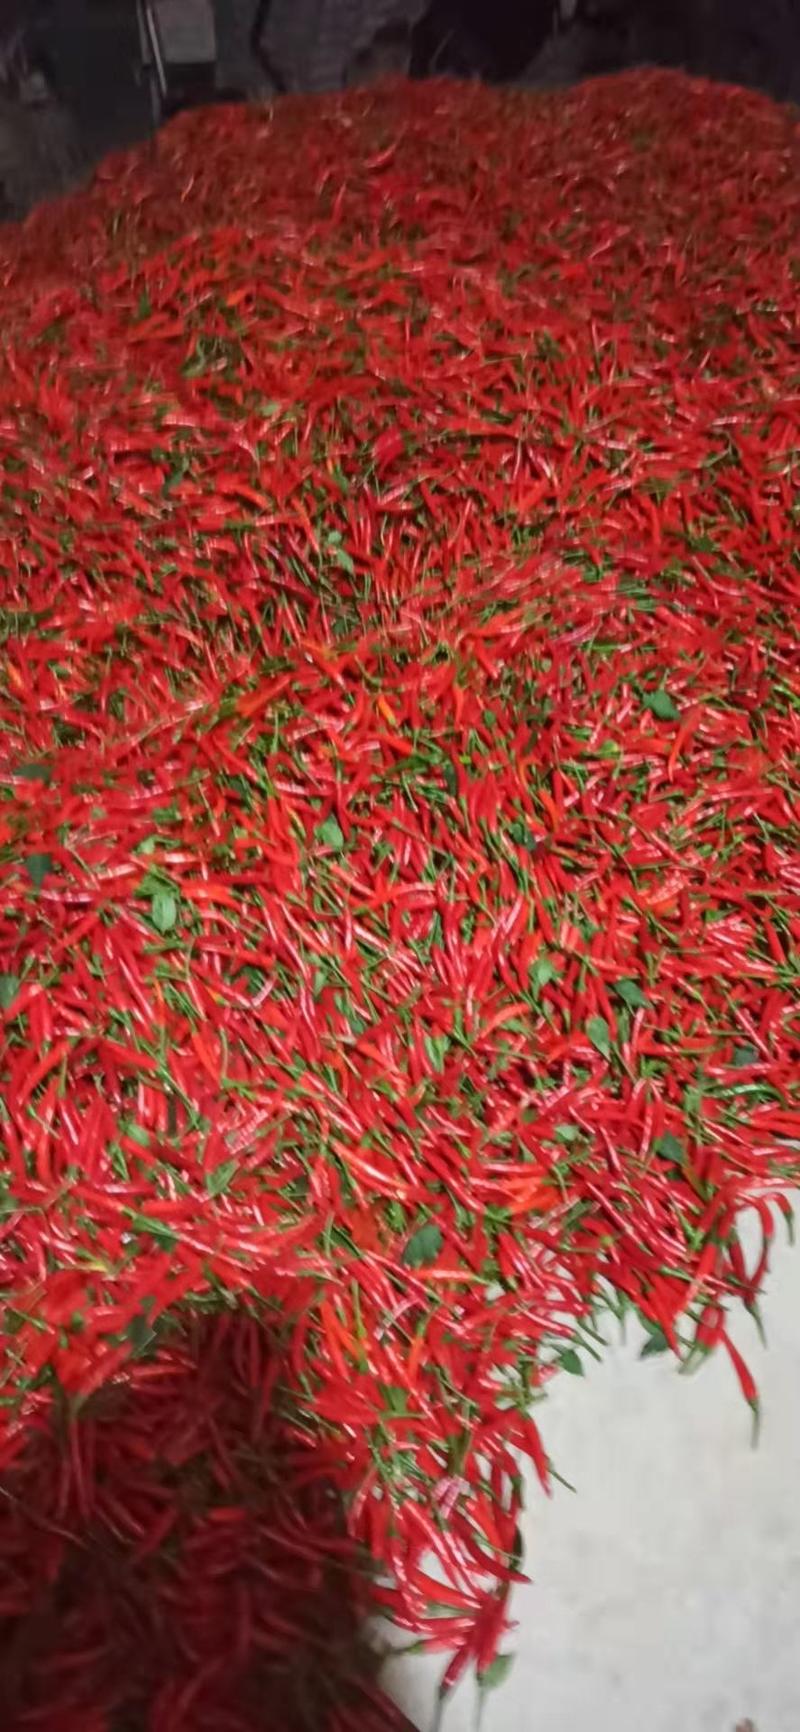 优质小米辣广西产地辣椒大量现货供应，品质优良，价格实惠。